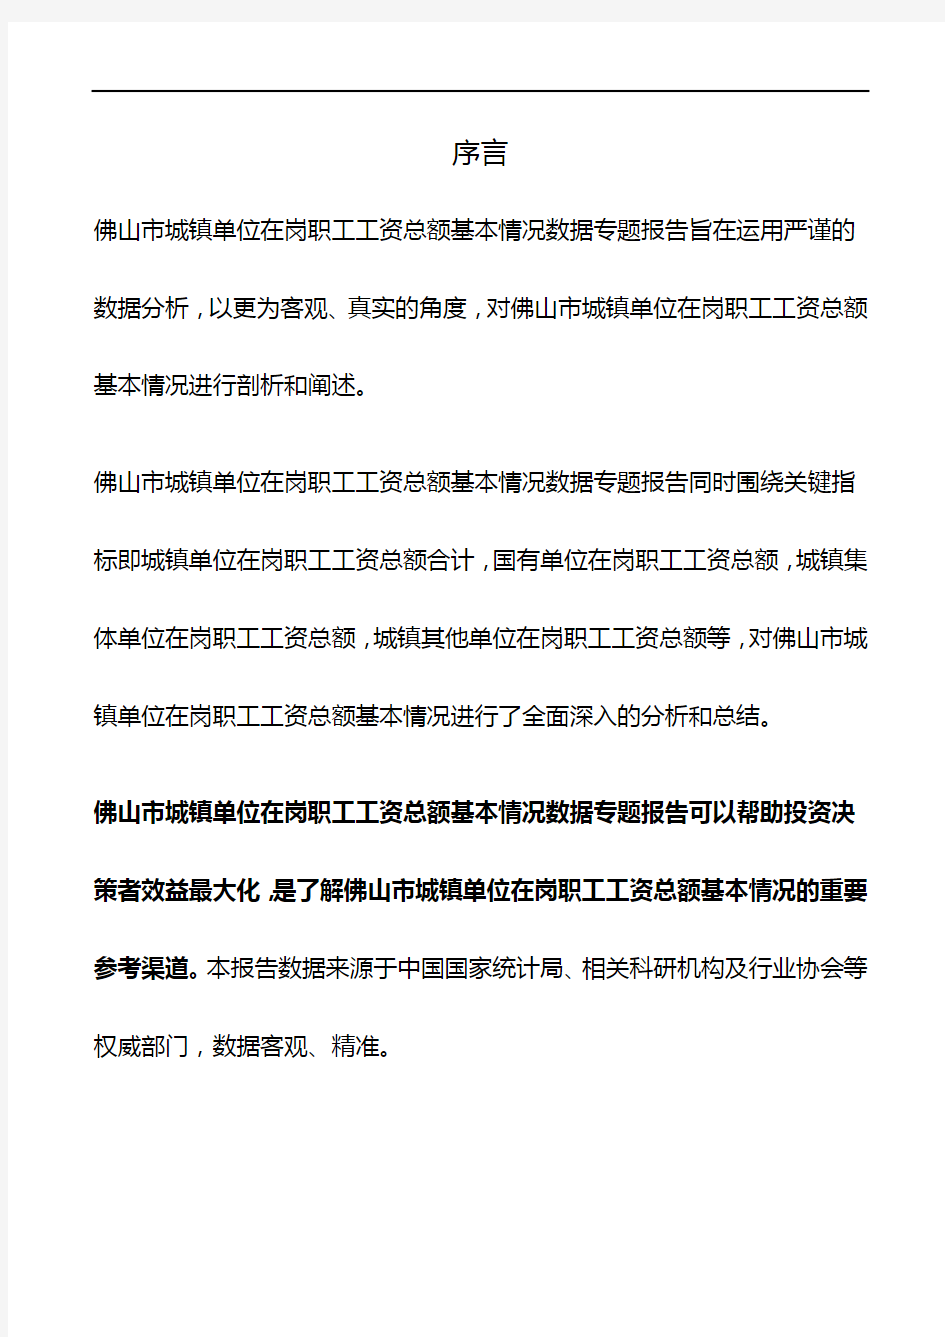 广东省佛山市城镇单位在岗职工工资总额基本情况数据专题报告2019版